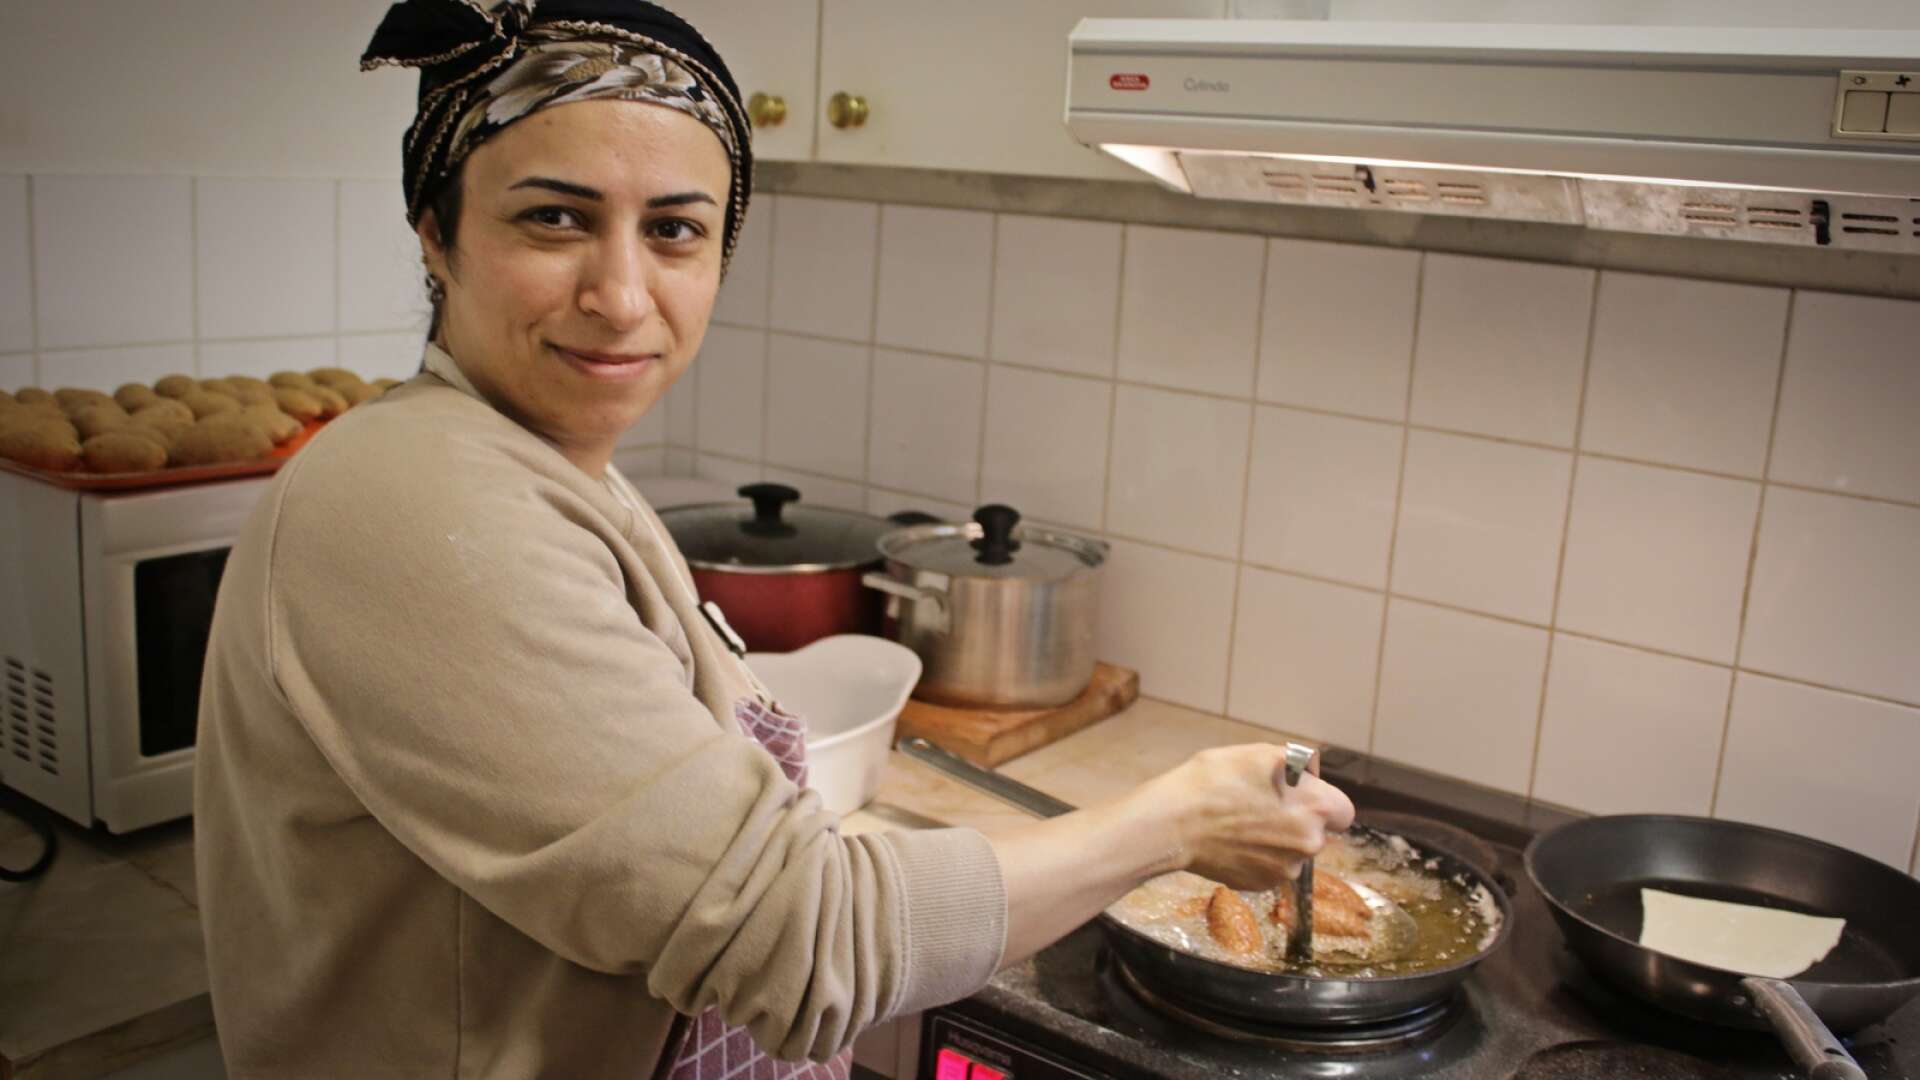 Mahida friterade kibbeh - en slags krokett som äts i Syrien vid festliga tillfällen.